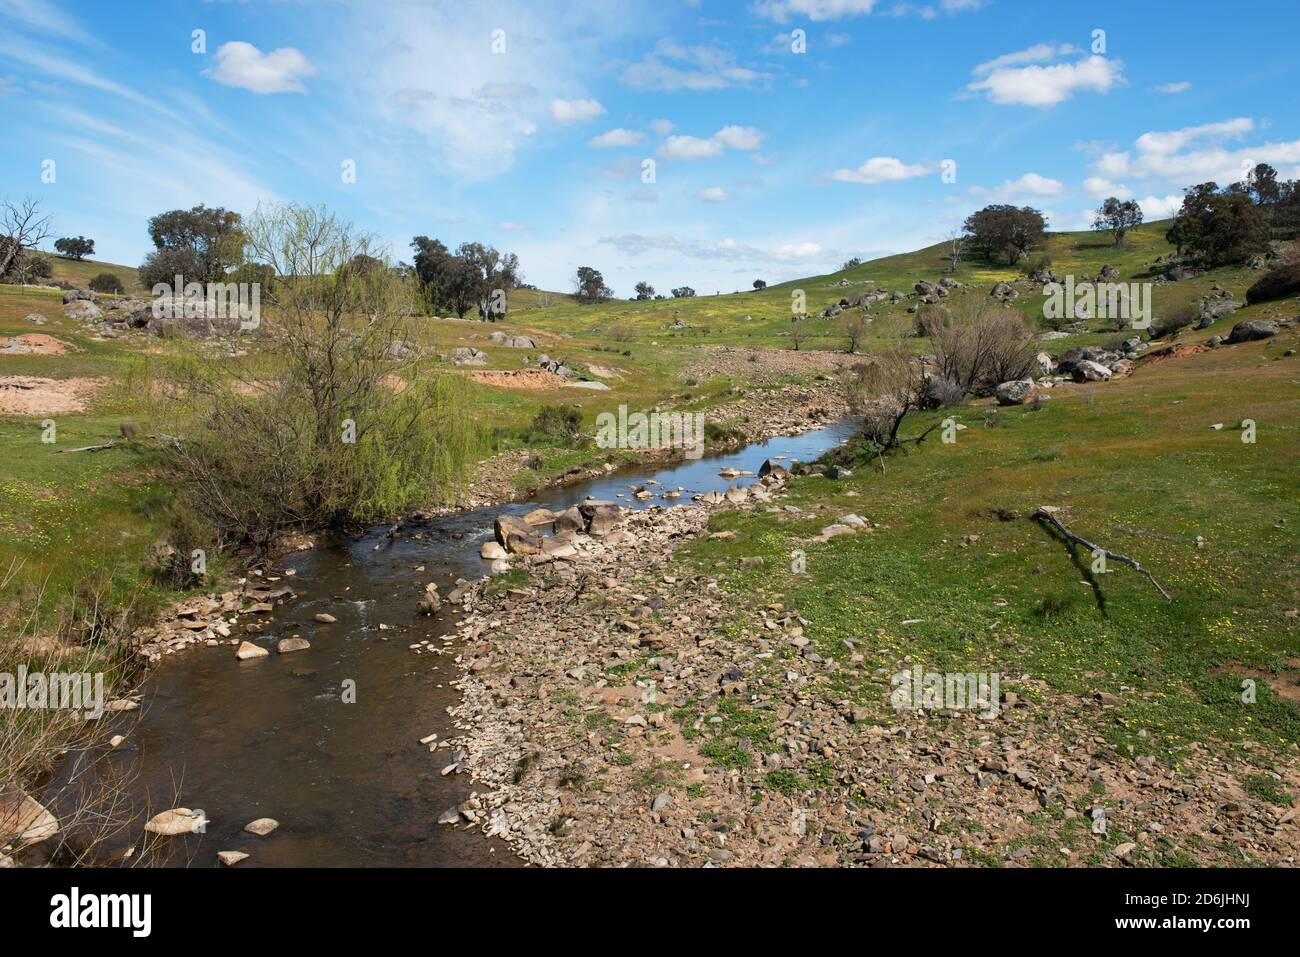 Grassy Creek near Rugby, NSW, Australia Stock Photo